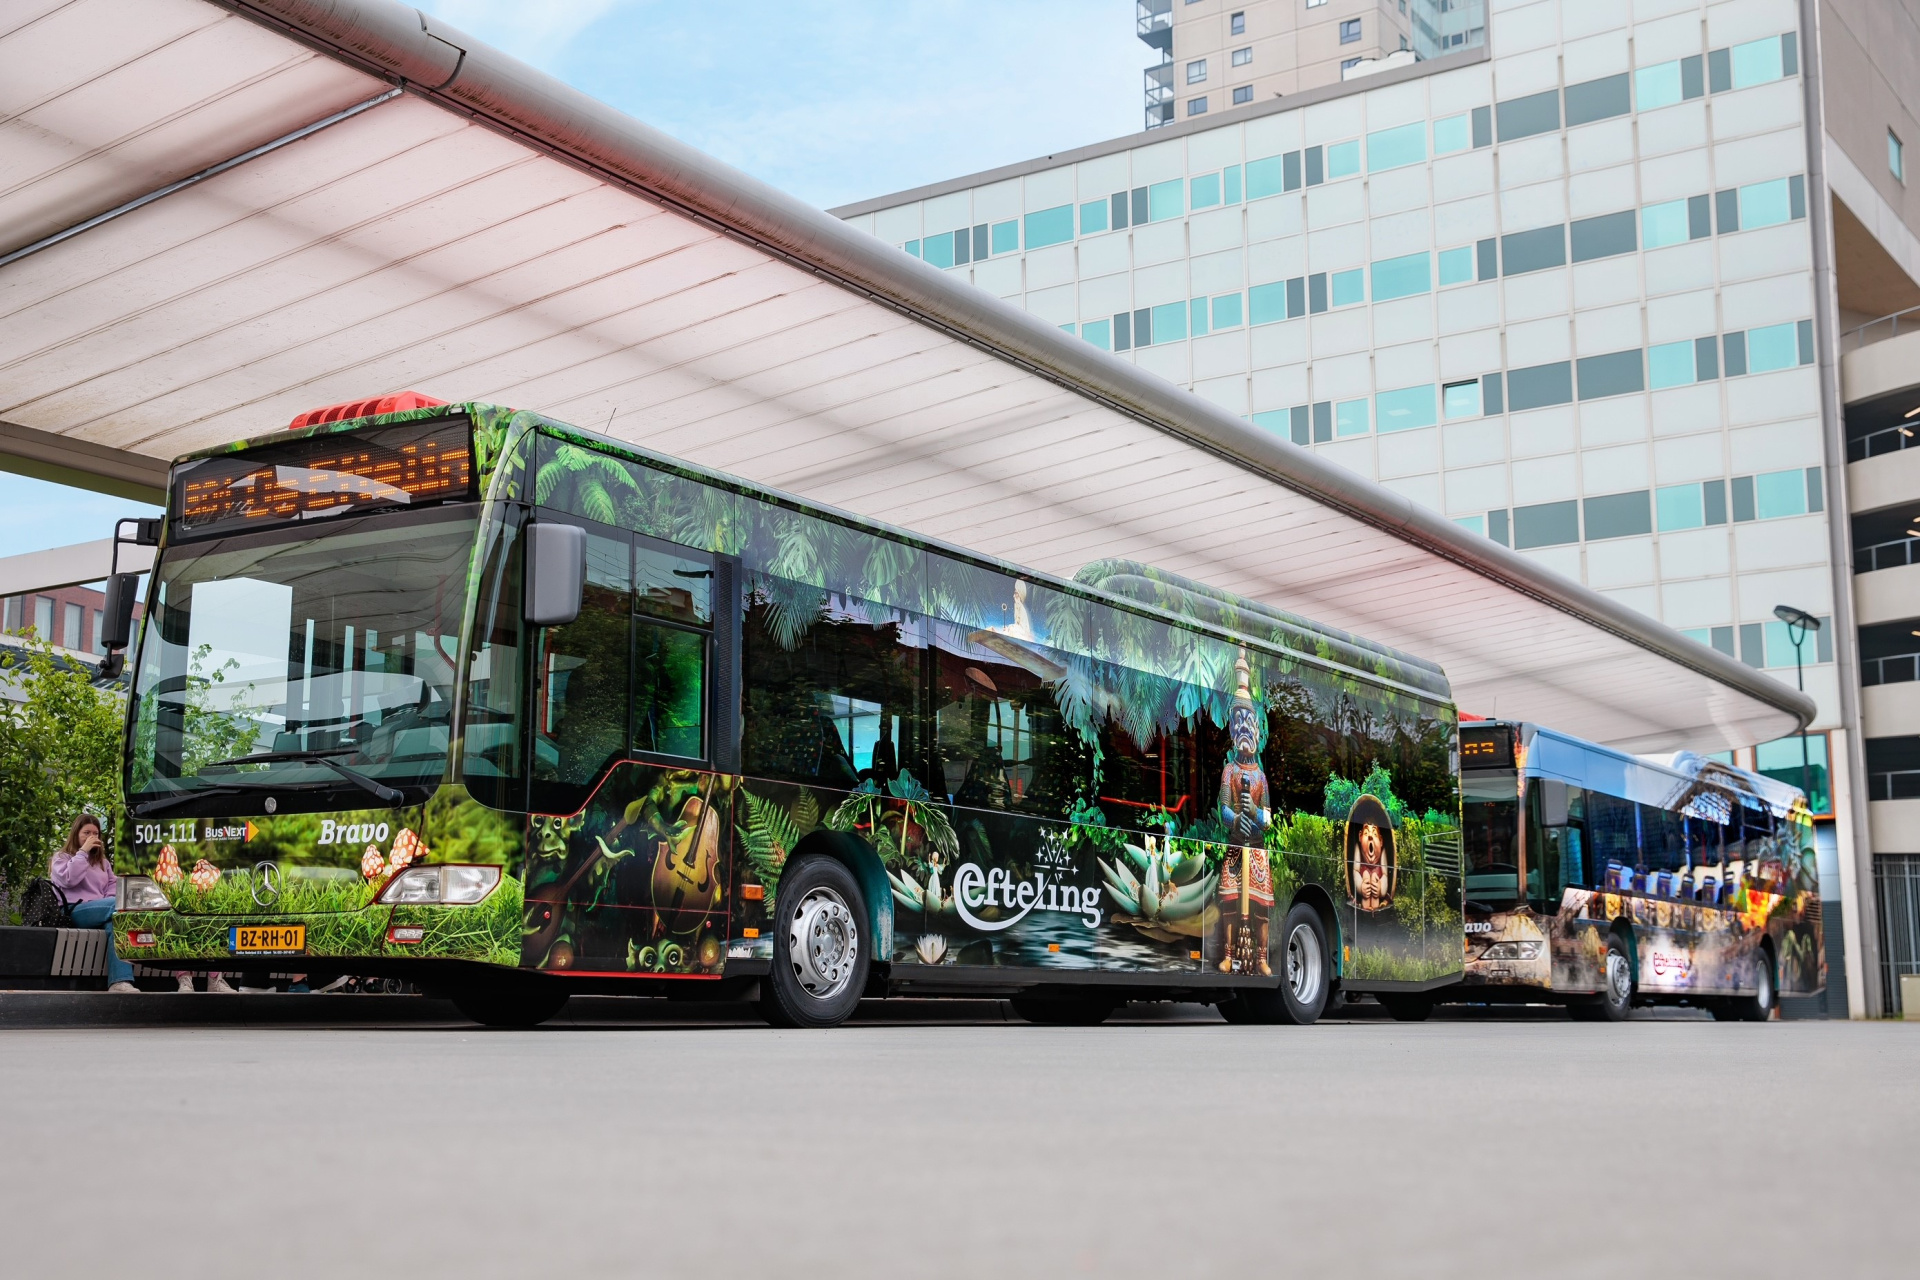 De twee bussen zijn opgemaakt in Efteling stijl. Een bus heeft het thema sprookjesbos en een bus heeft het thema Joris en de draak